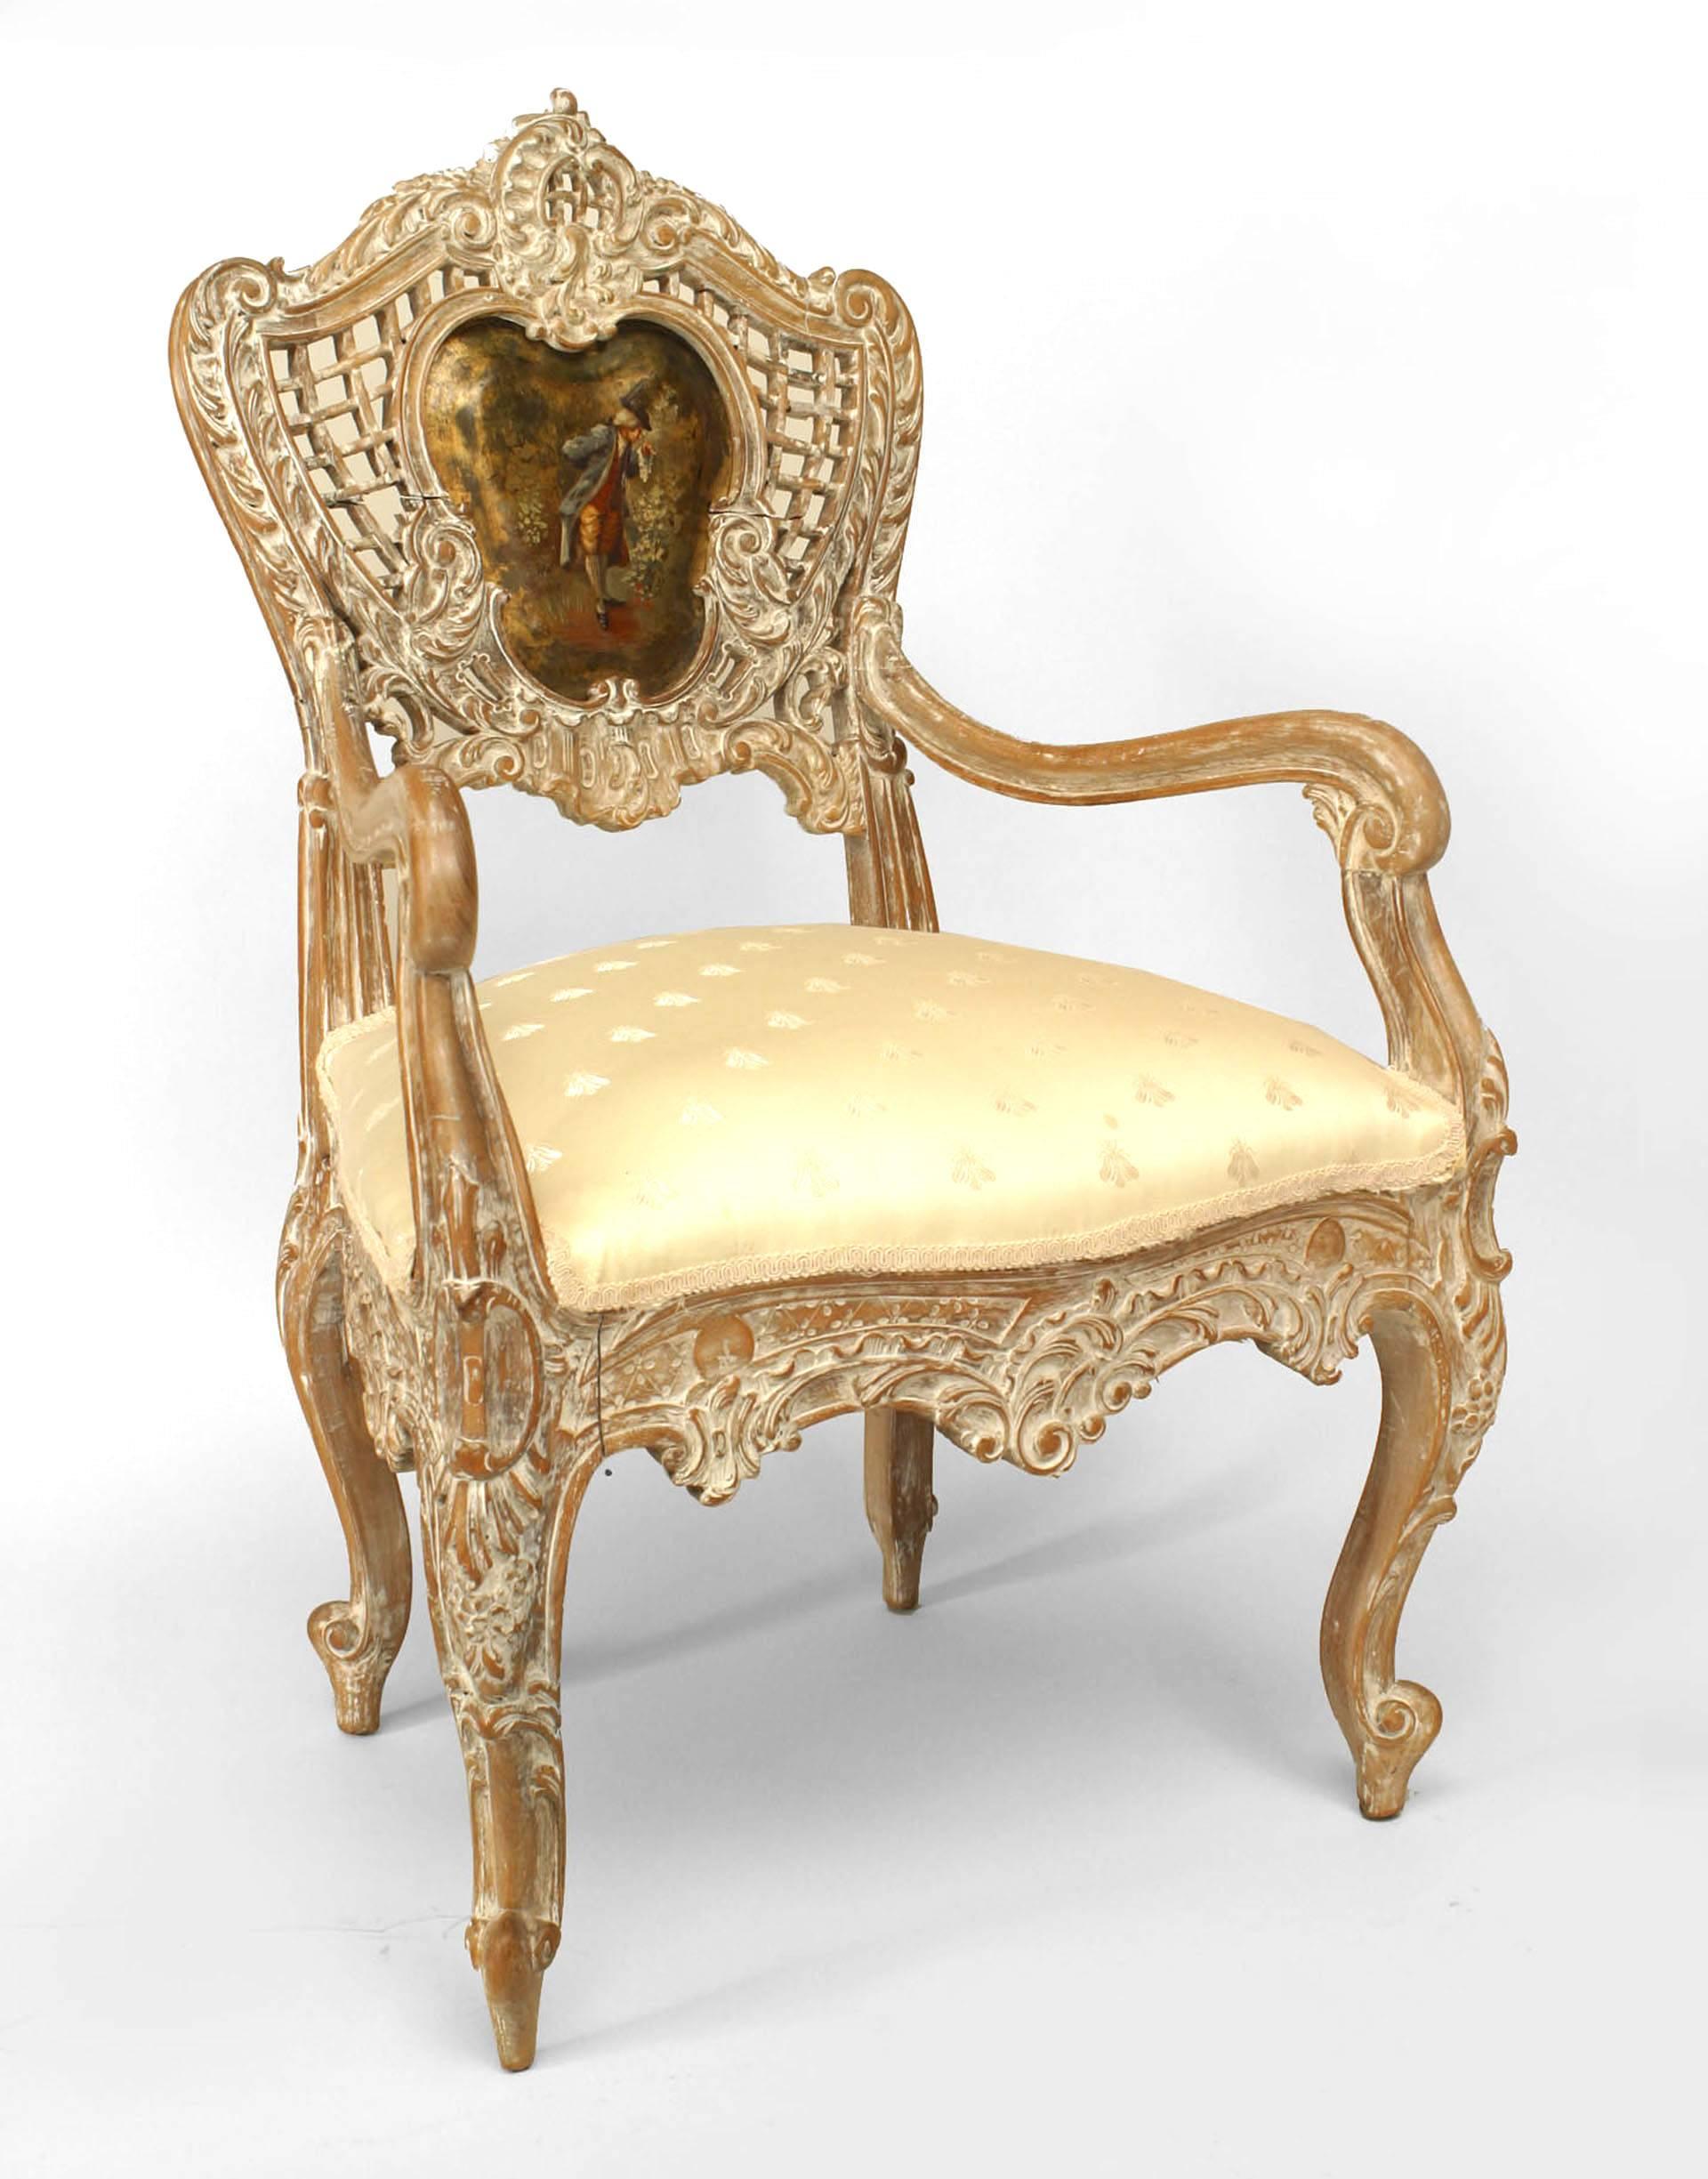 Paire de fauteuils français de style Louis XV (19e siècle) en bois blanchi, avec dossiers à treillis ouverts sculptés centrant des panneaux peints en forme de scènes figuratives, et sièges tapissés de blanc. (PRIX PAR PAILLE)
